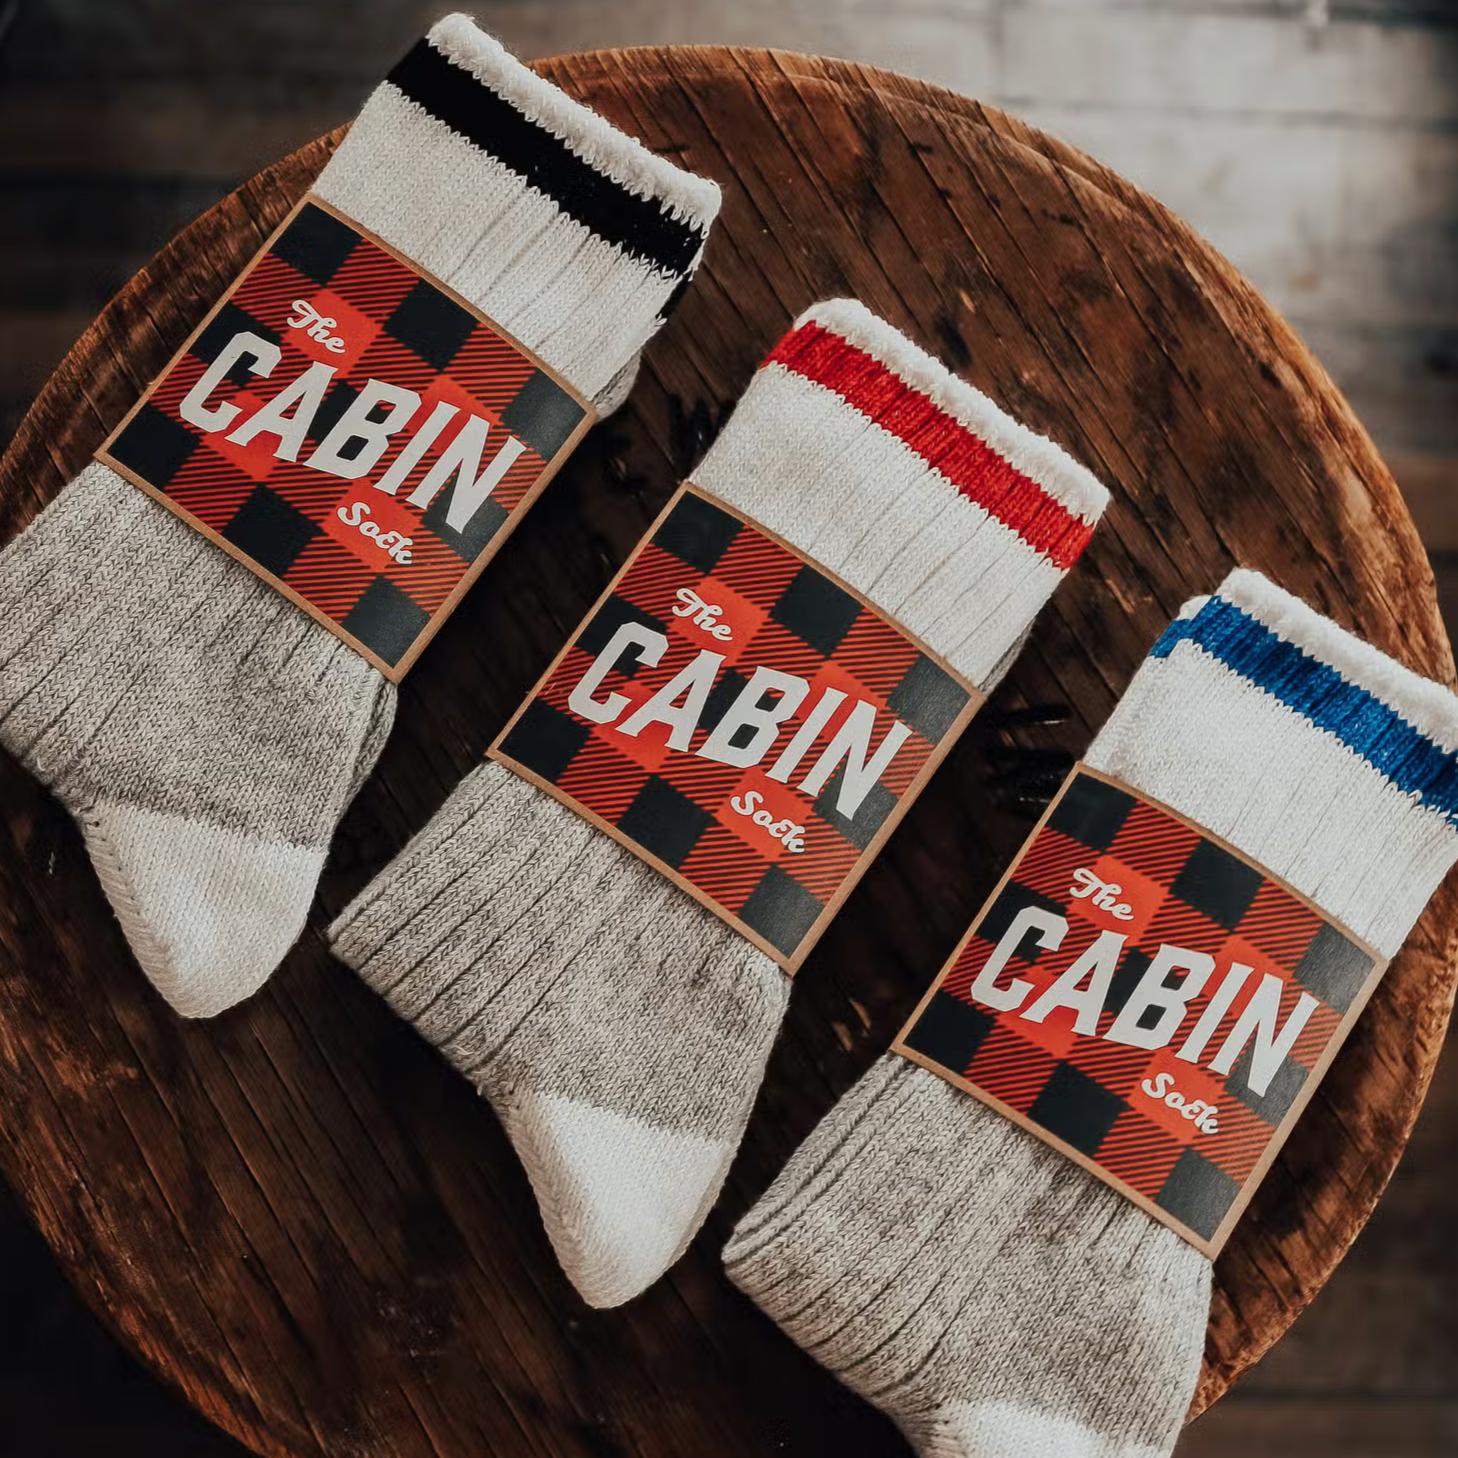 Cabin Socks